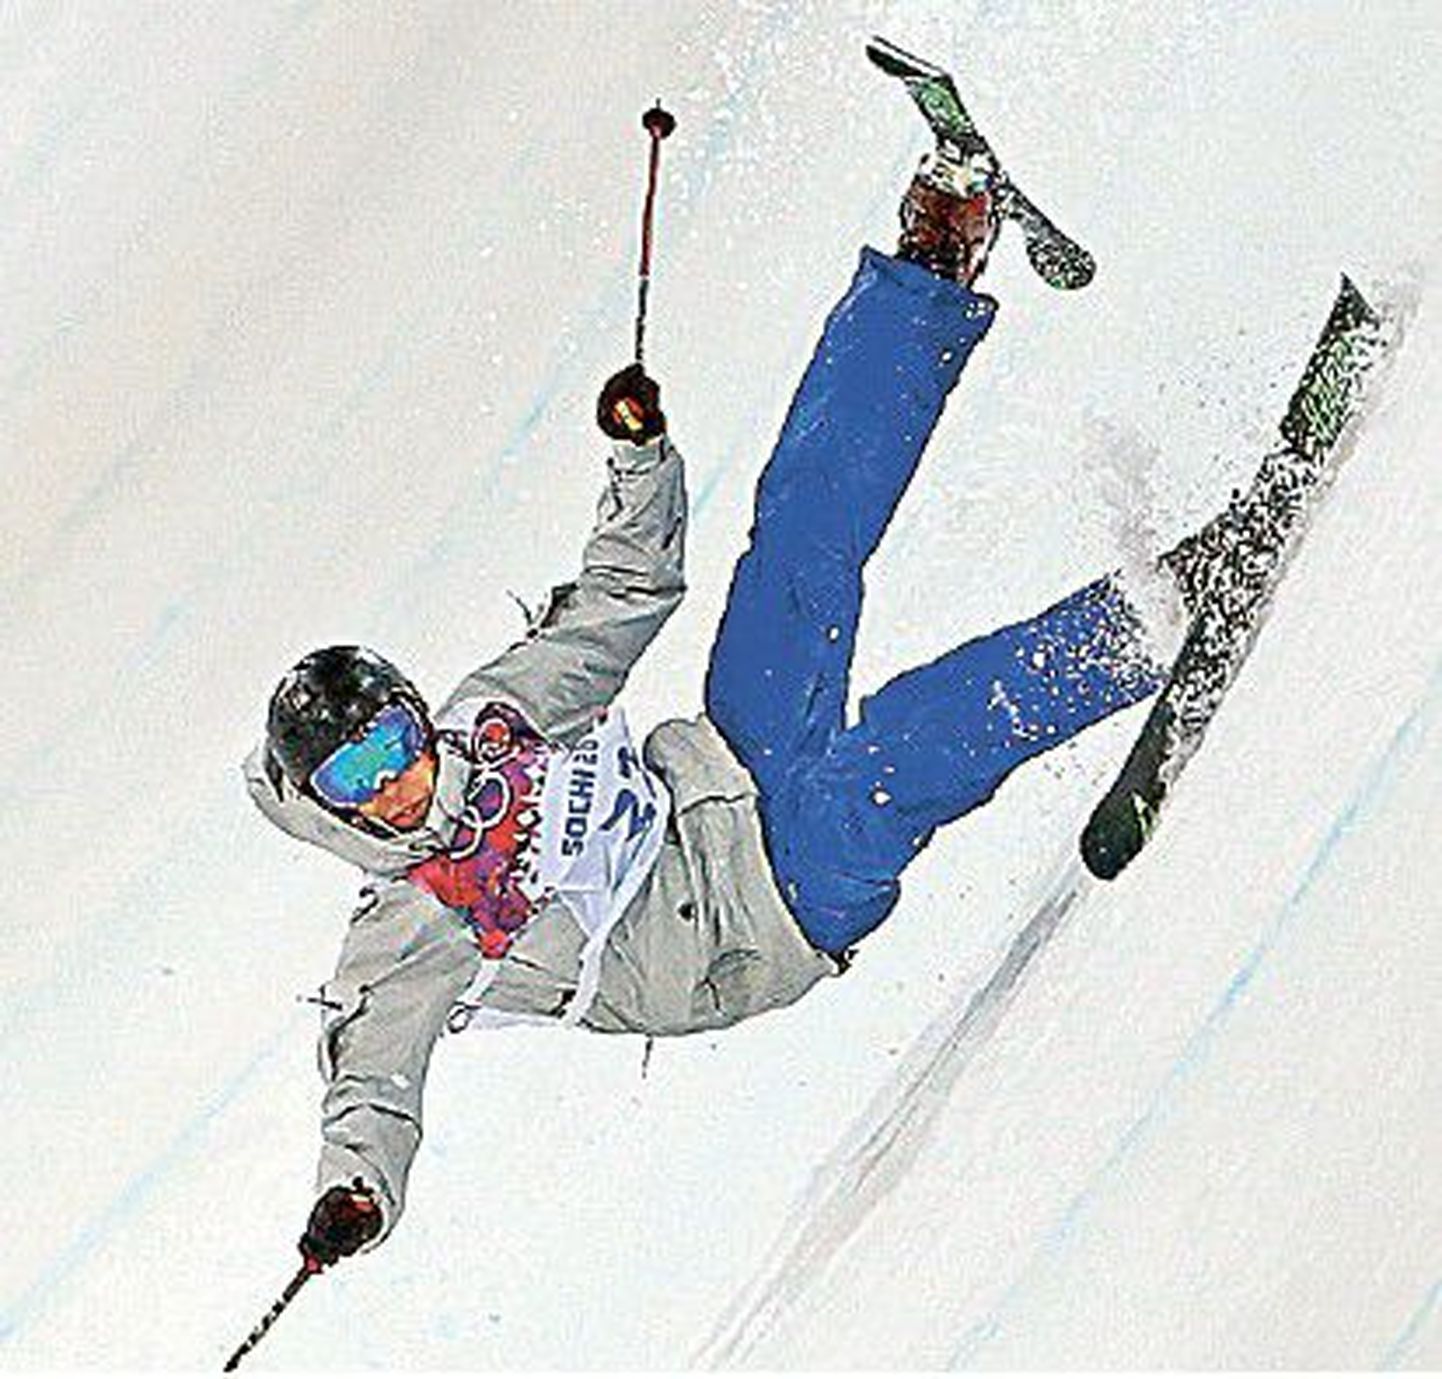 Из-за падения лидер сборной России по лыжному хафпайпу Павел Набоких не смог выйти в финал. На Олимпиаде в Сочи падения спорт­сменов являются привычной картиной.